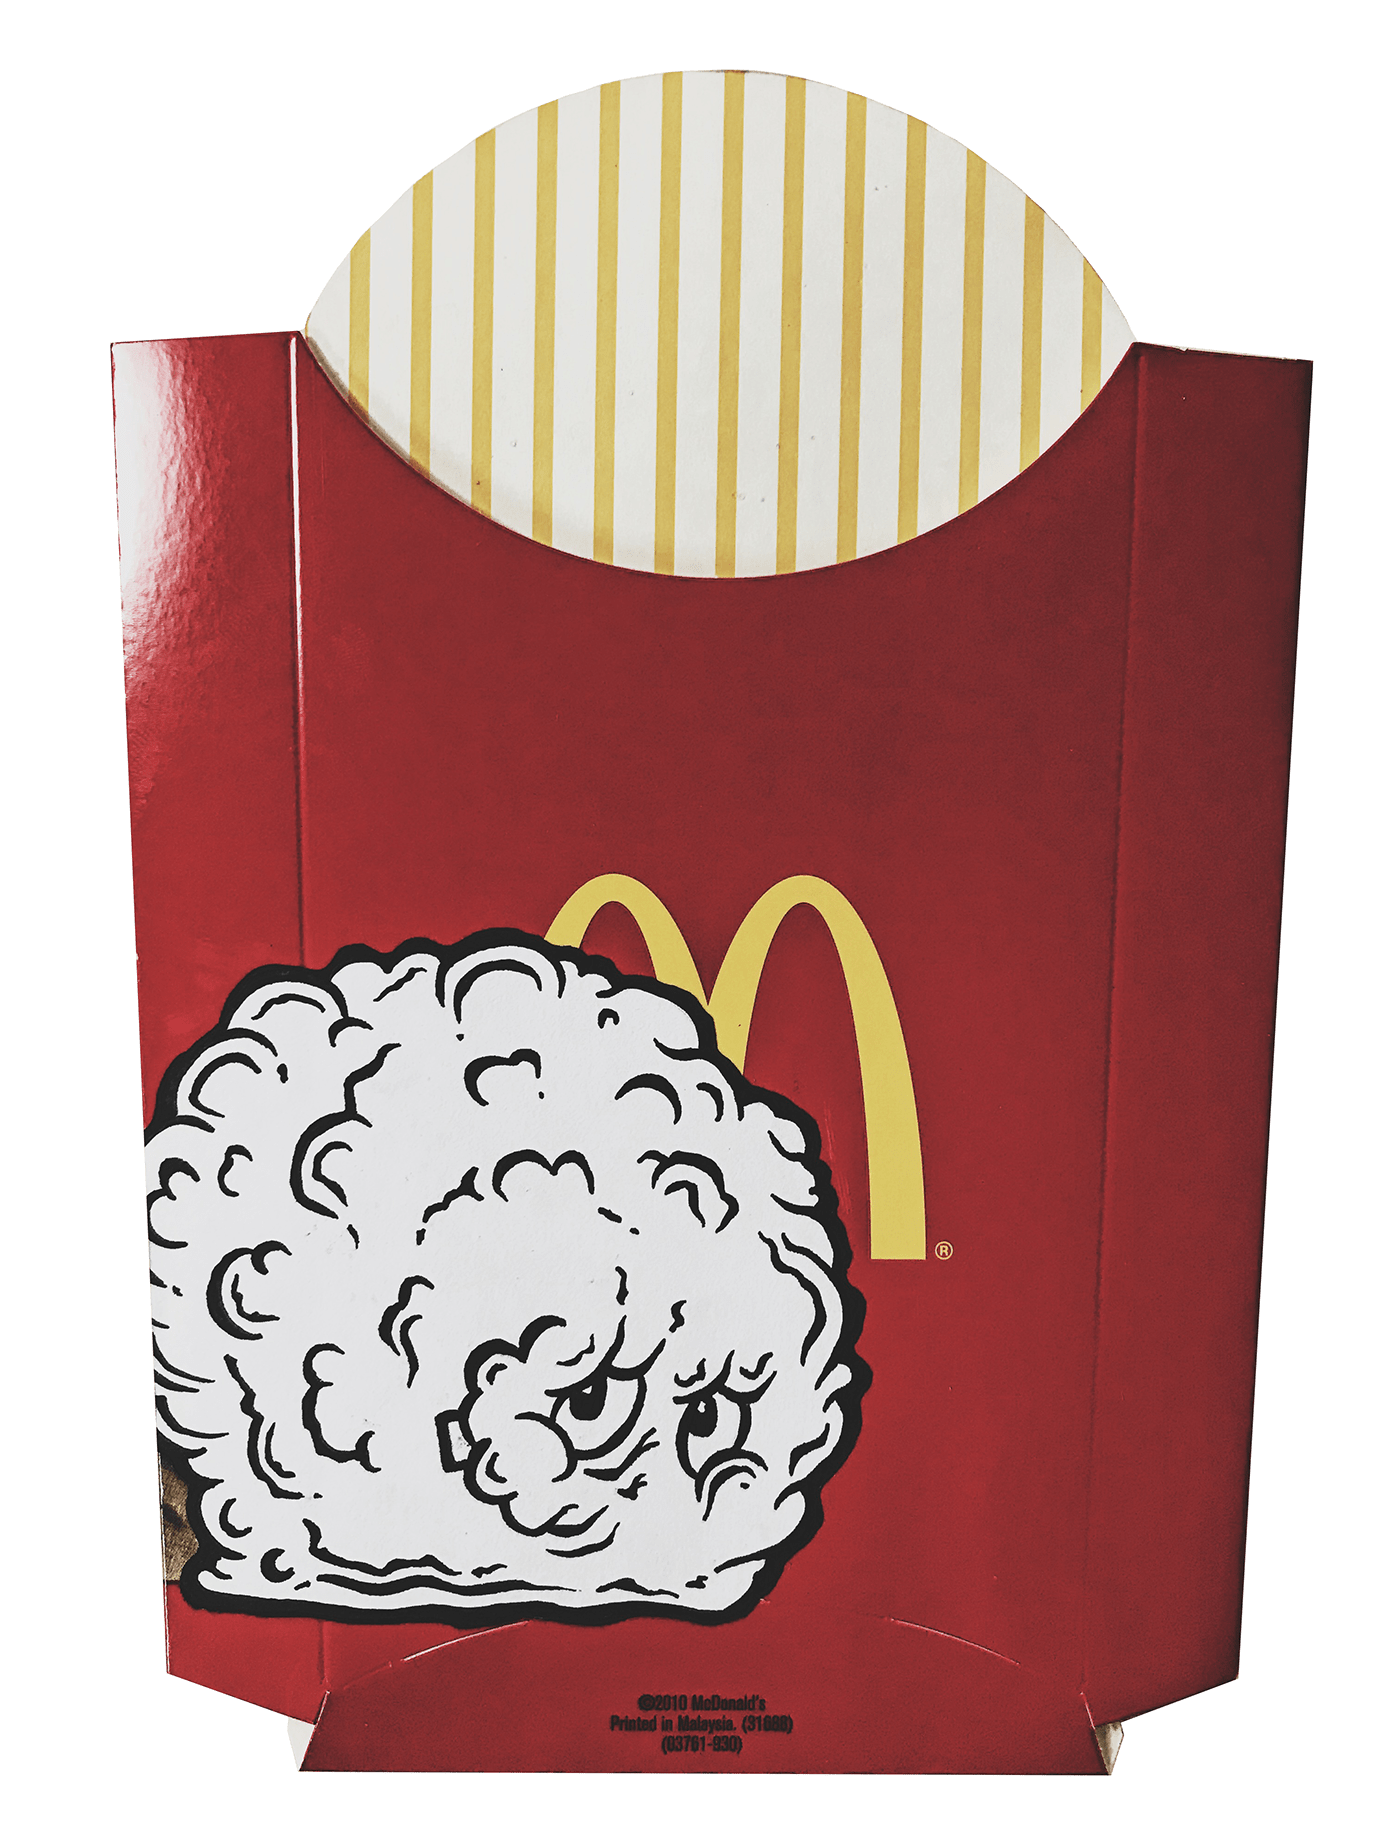 Adult Swim Aqua Teen Hunger Force cartoon Fast food McDonalds